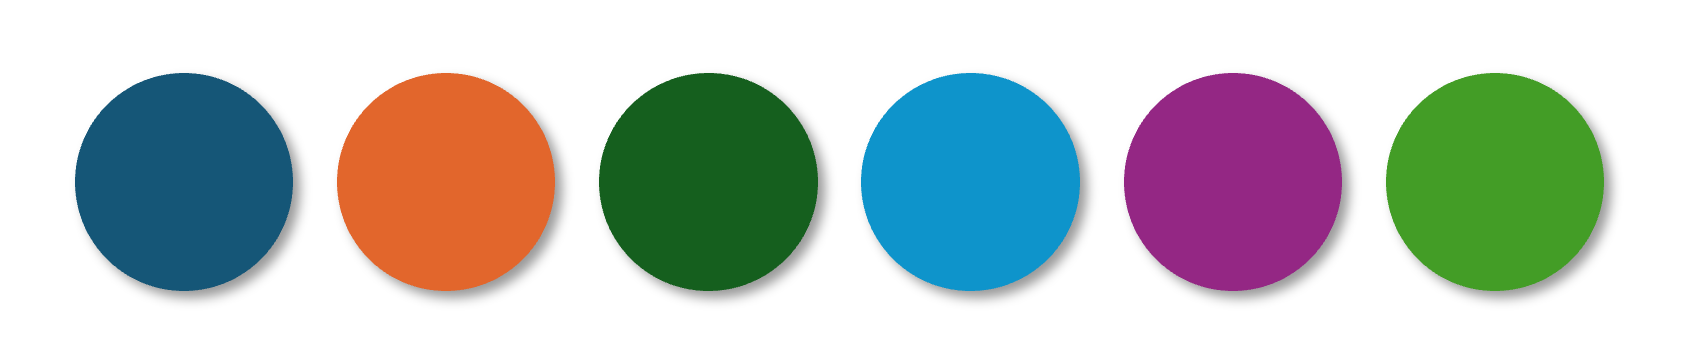 Punkte mit den sechs Akzentfarben der neuen Office-Designfarbpalette: Dunkelblau, Orange, Dunkelgrün, Hellblau, Violett, Hellgrün
